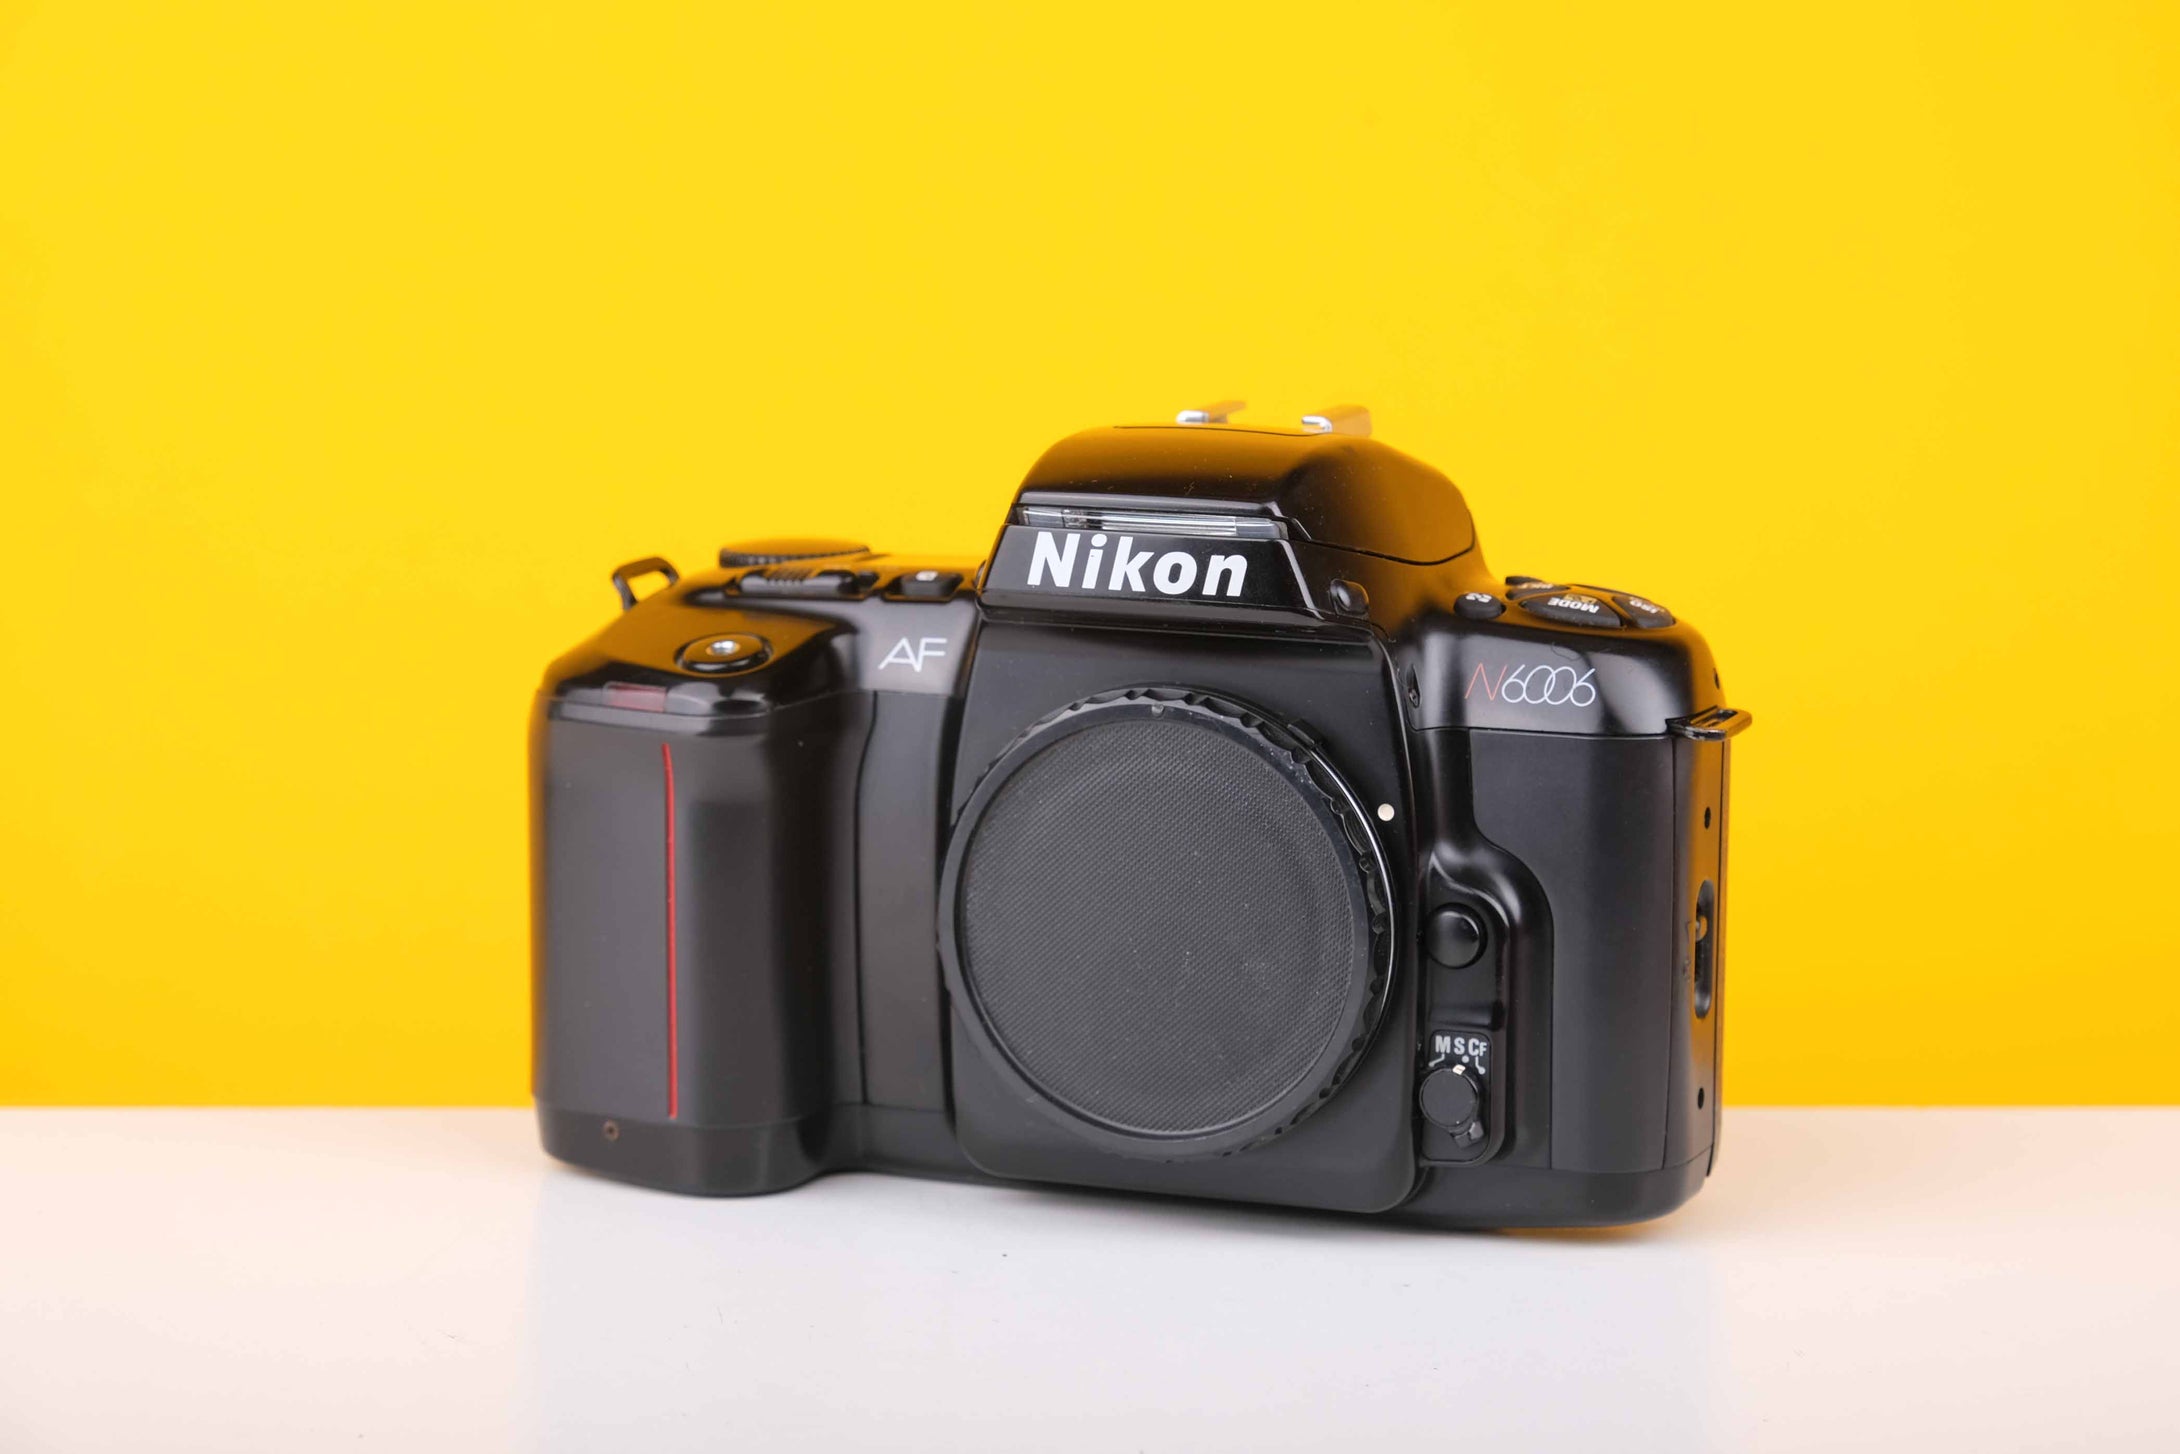 Nikon AF N6006 35mm Film Camera Body